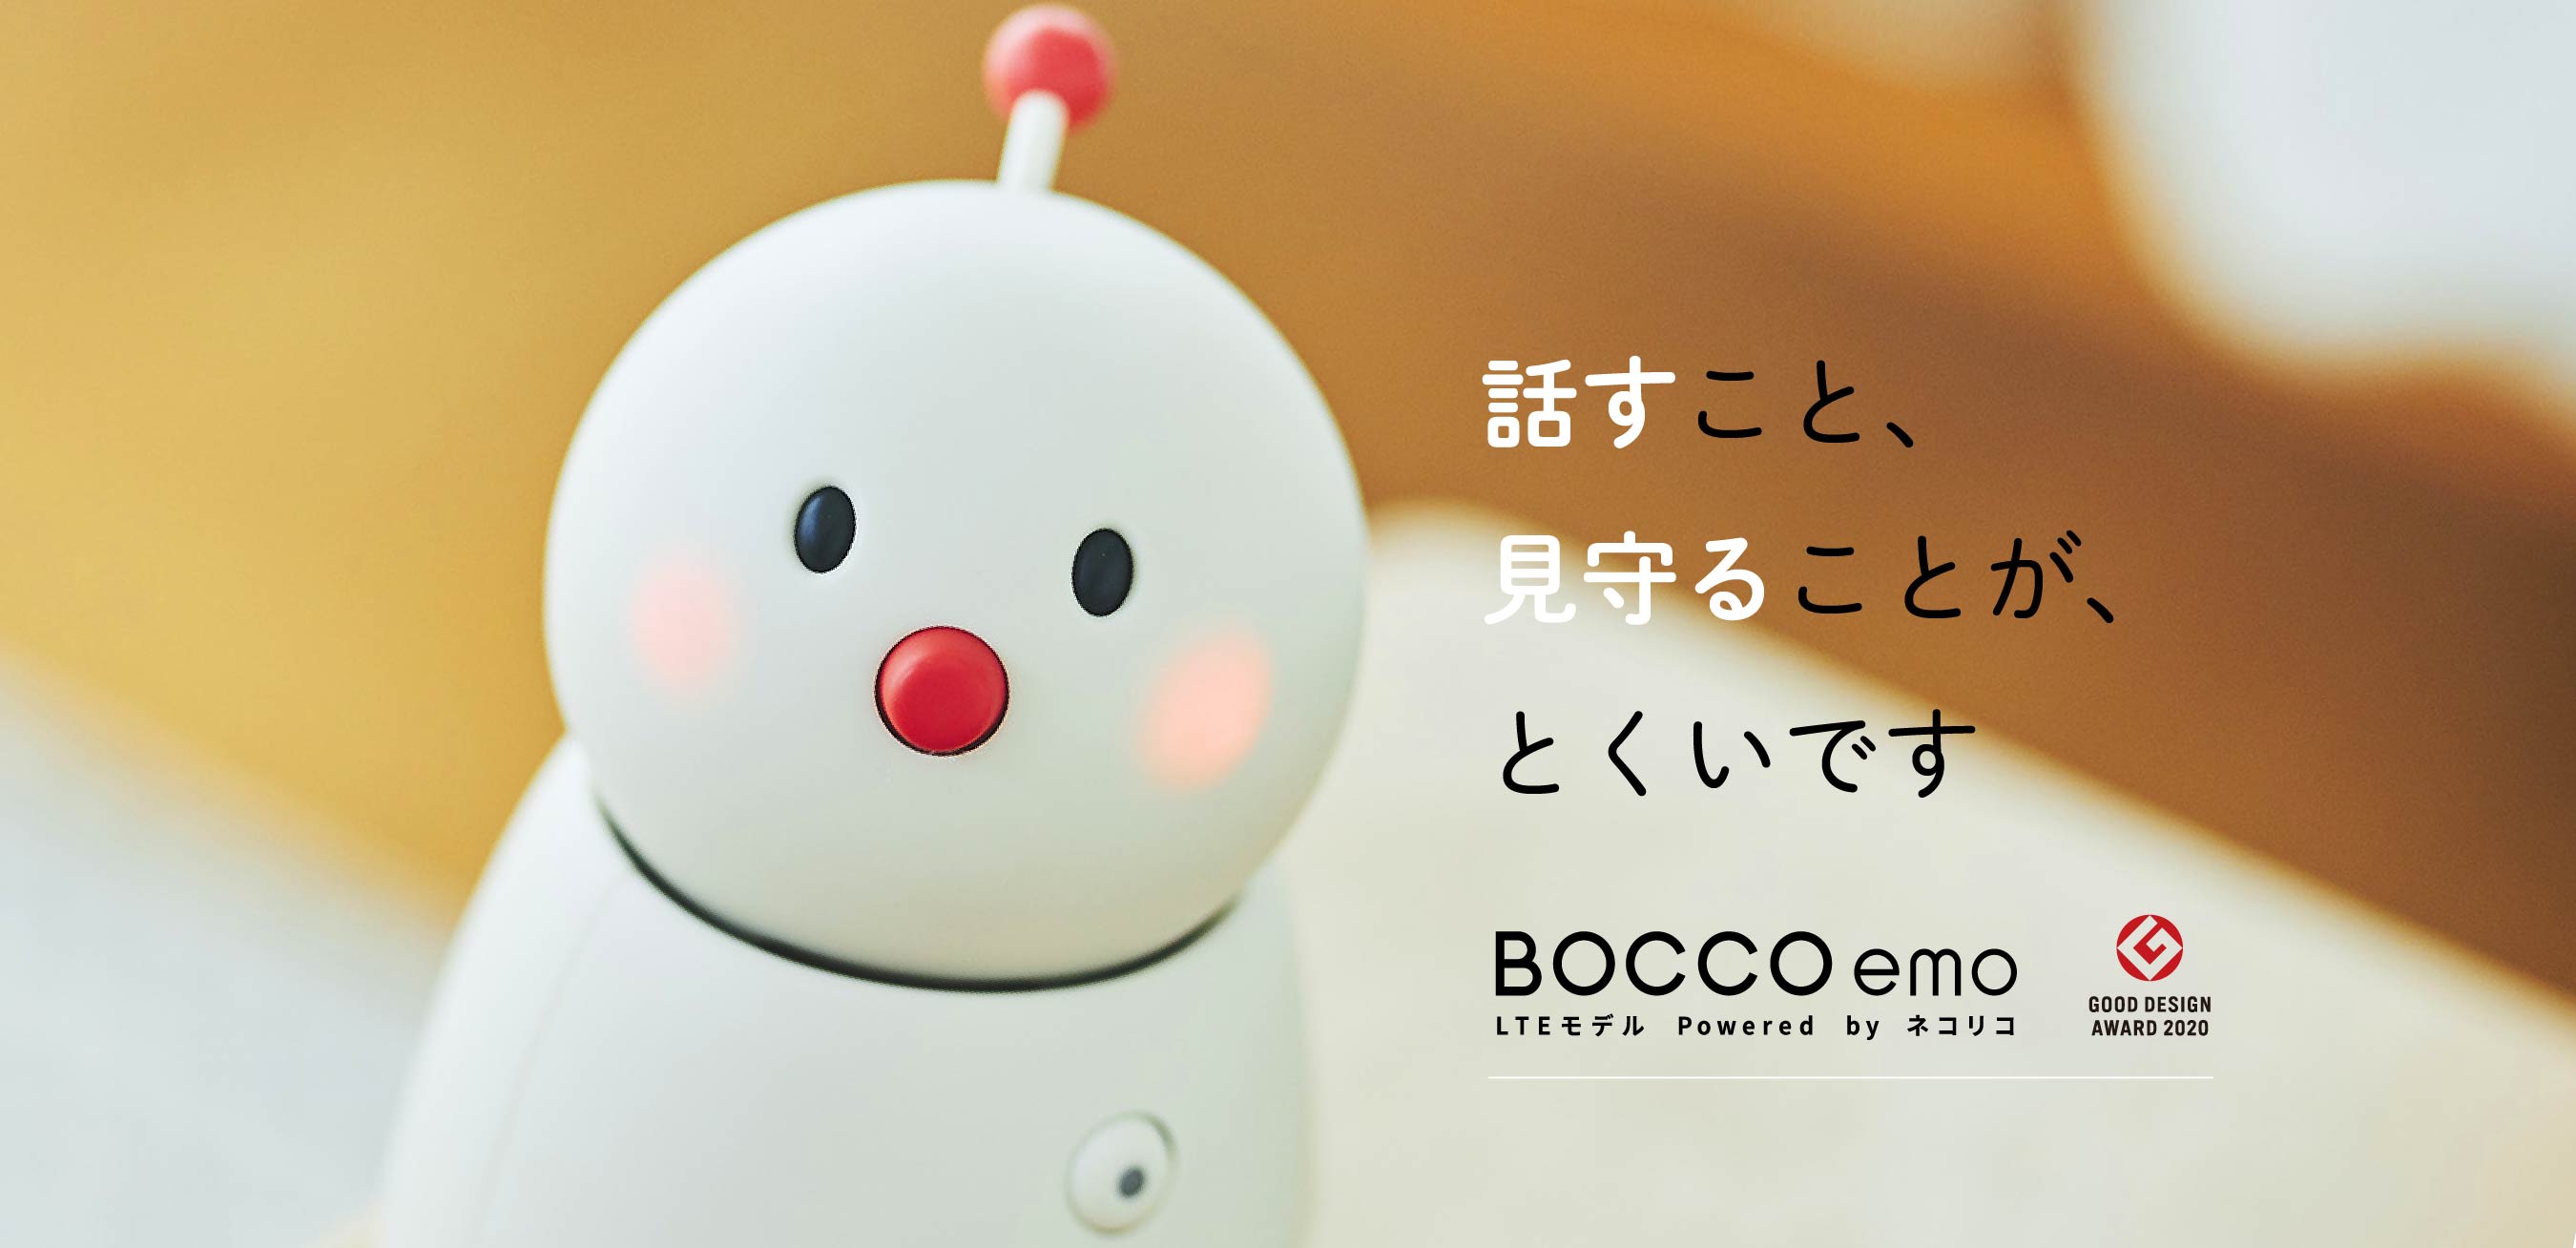 話すこと、見守ることが、とくいです BOCCO emo LTEモデル Powered by ネコリコ